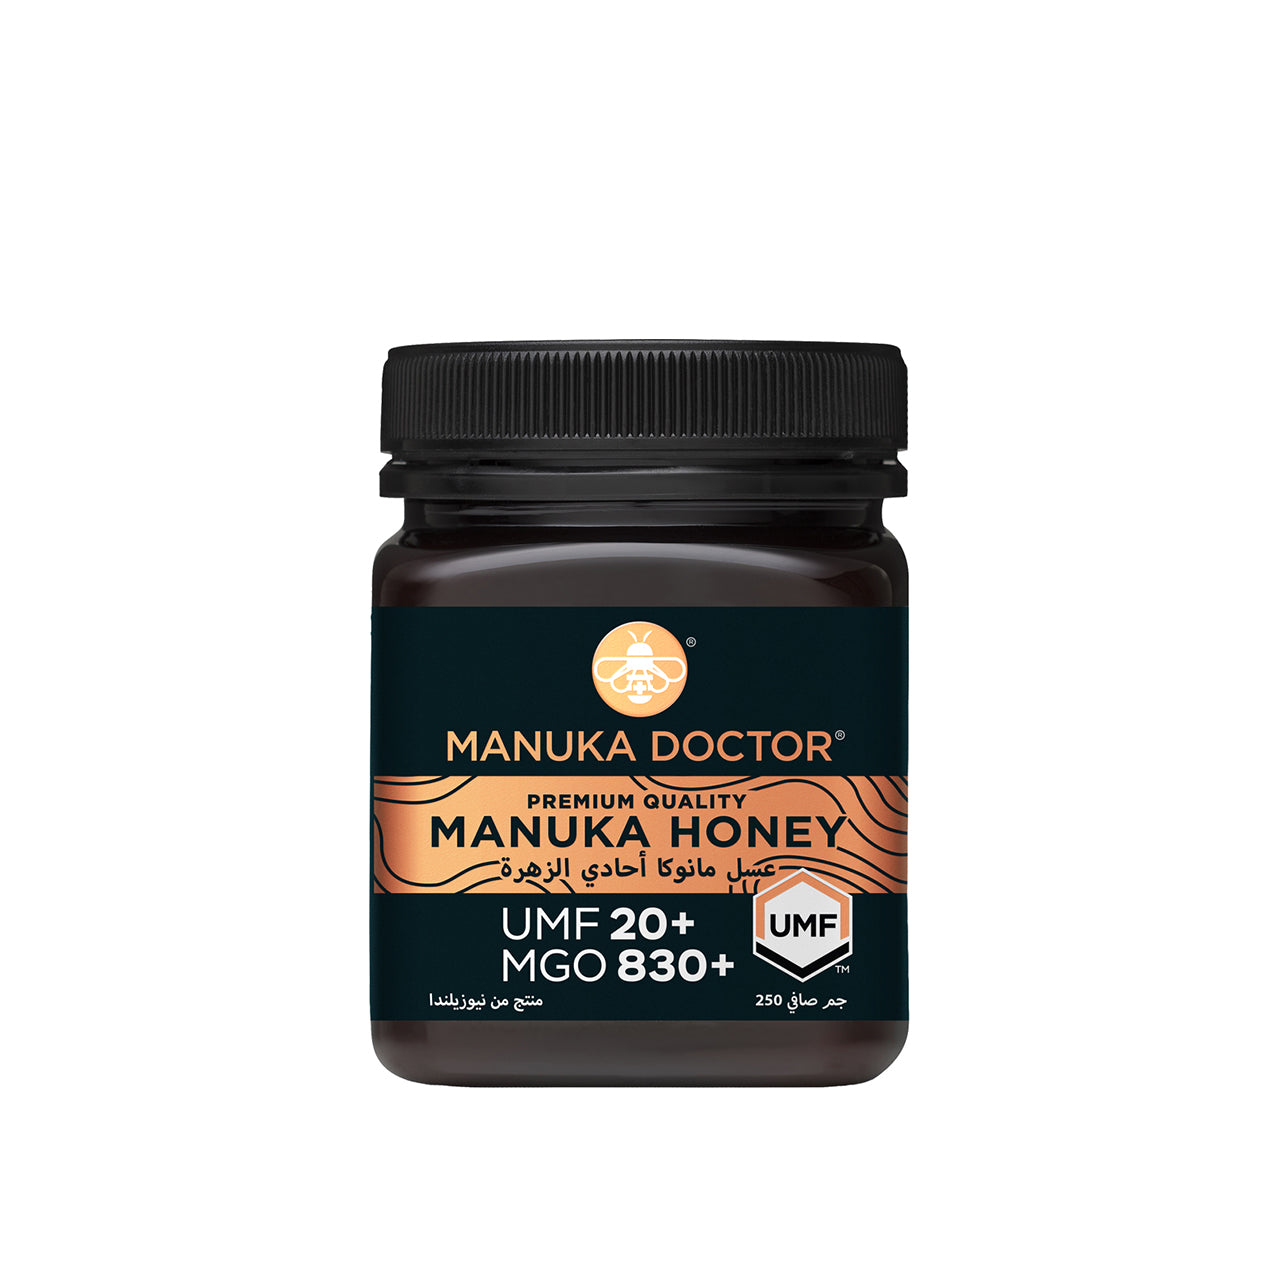 Manuka Doctor Manuka Honey UMF 20+ MGO 830+